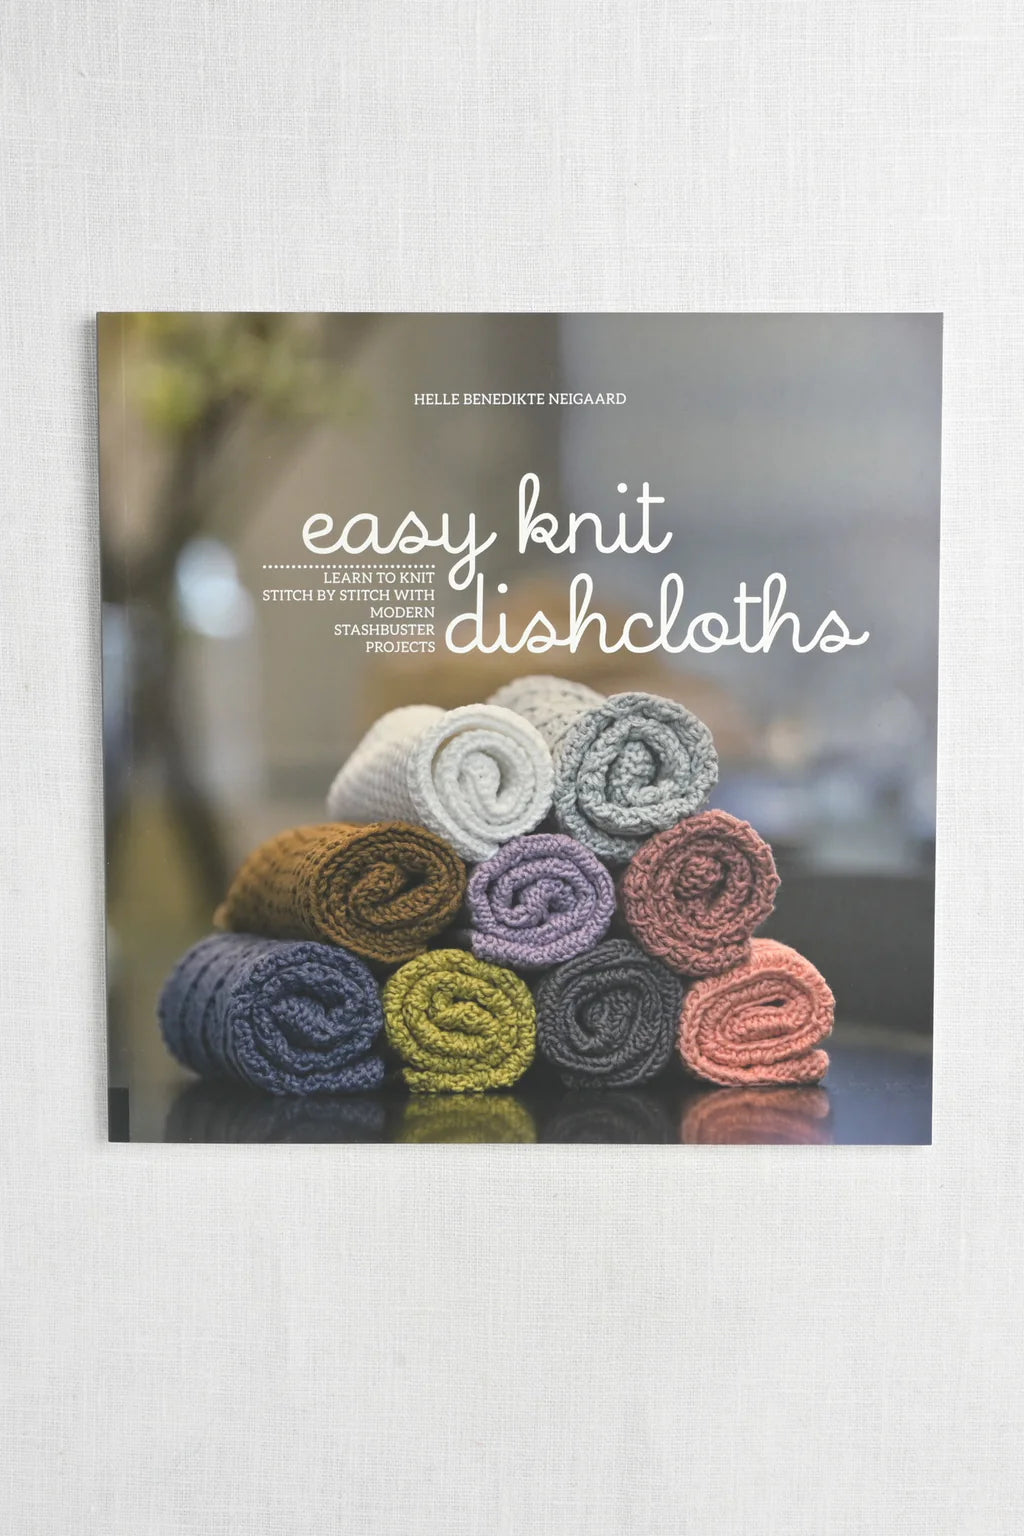 Easy Knit Dishcloths